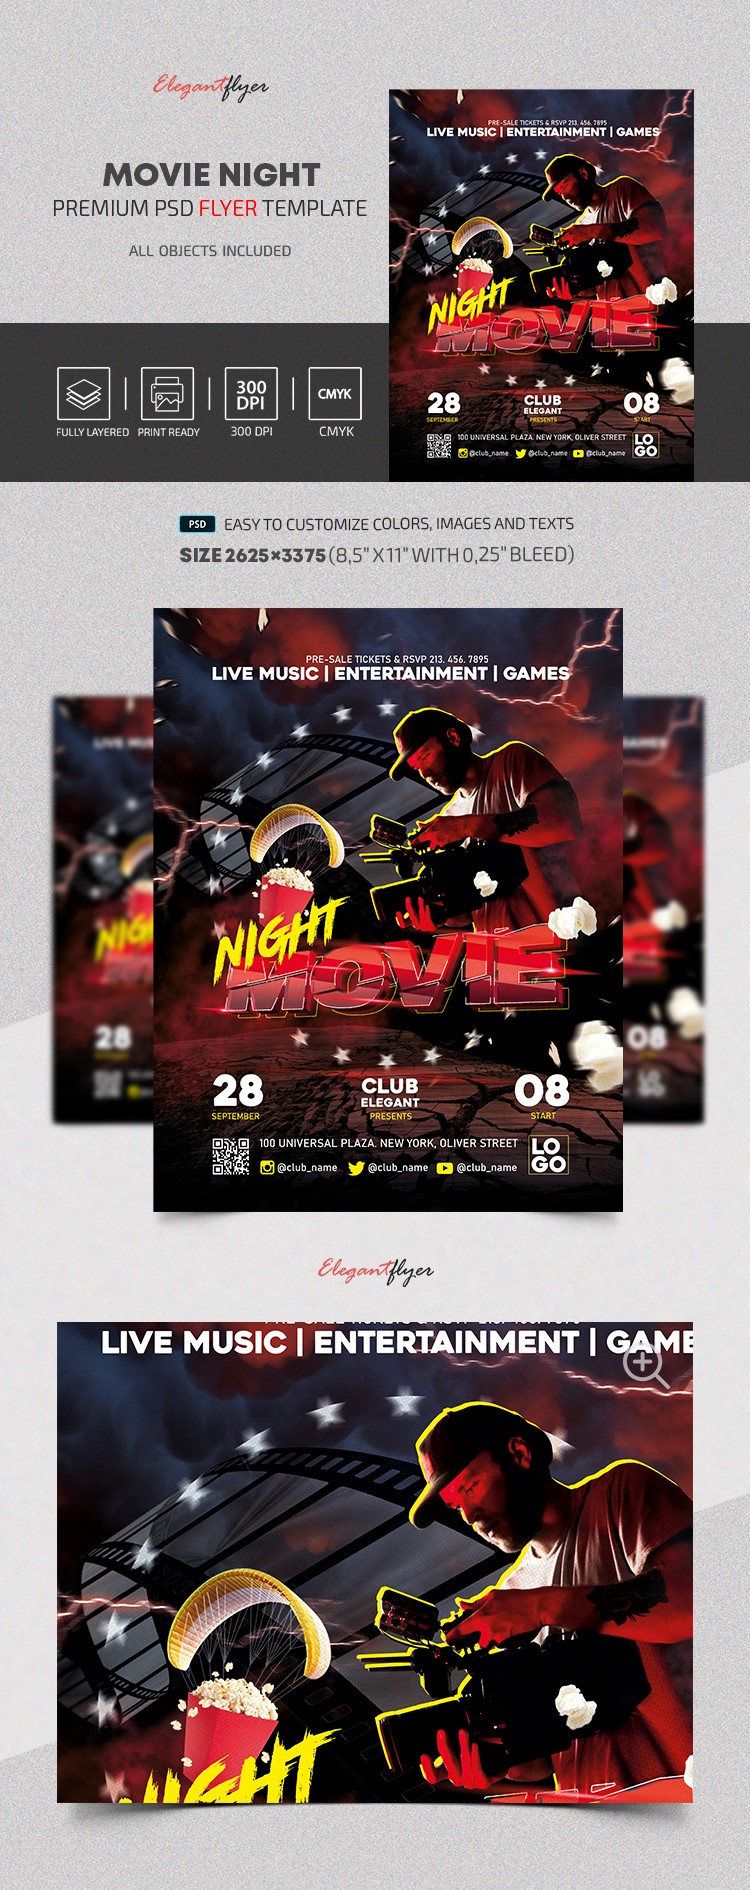 Movie Night Flyer by ElegantFlyer